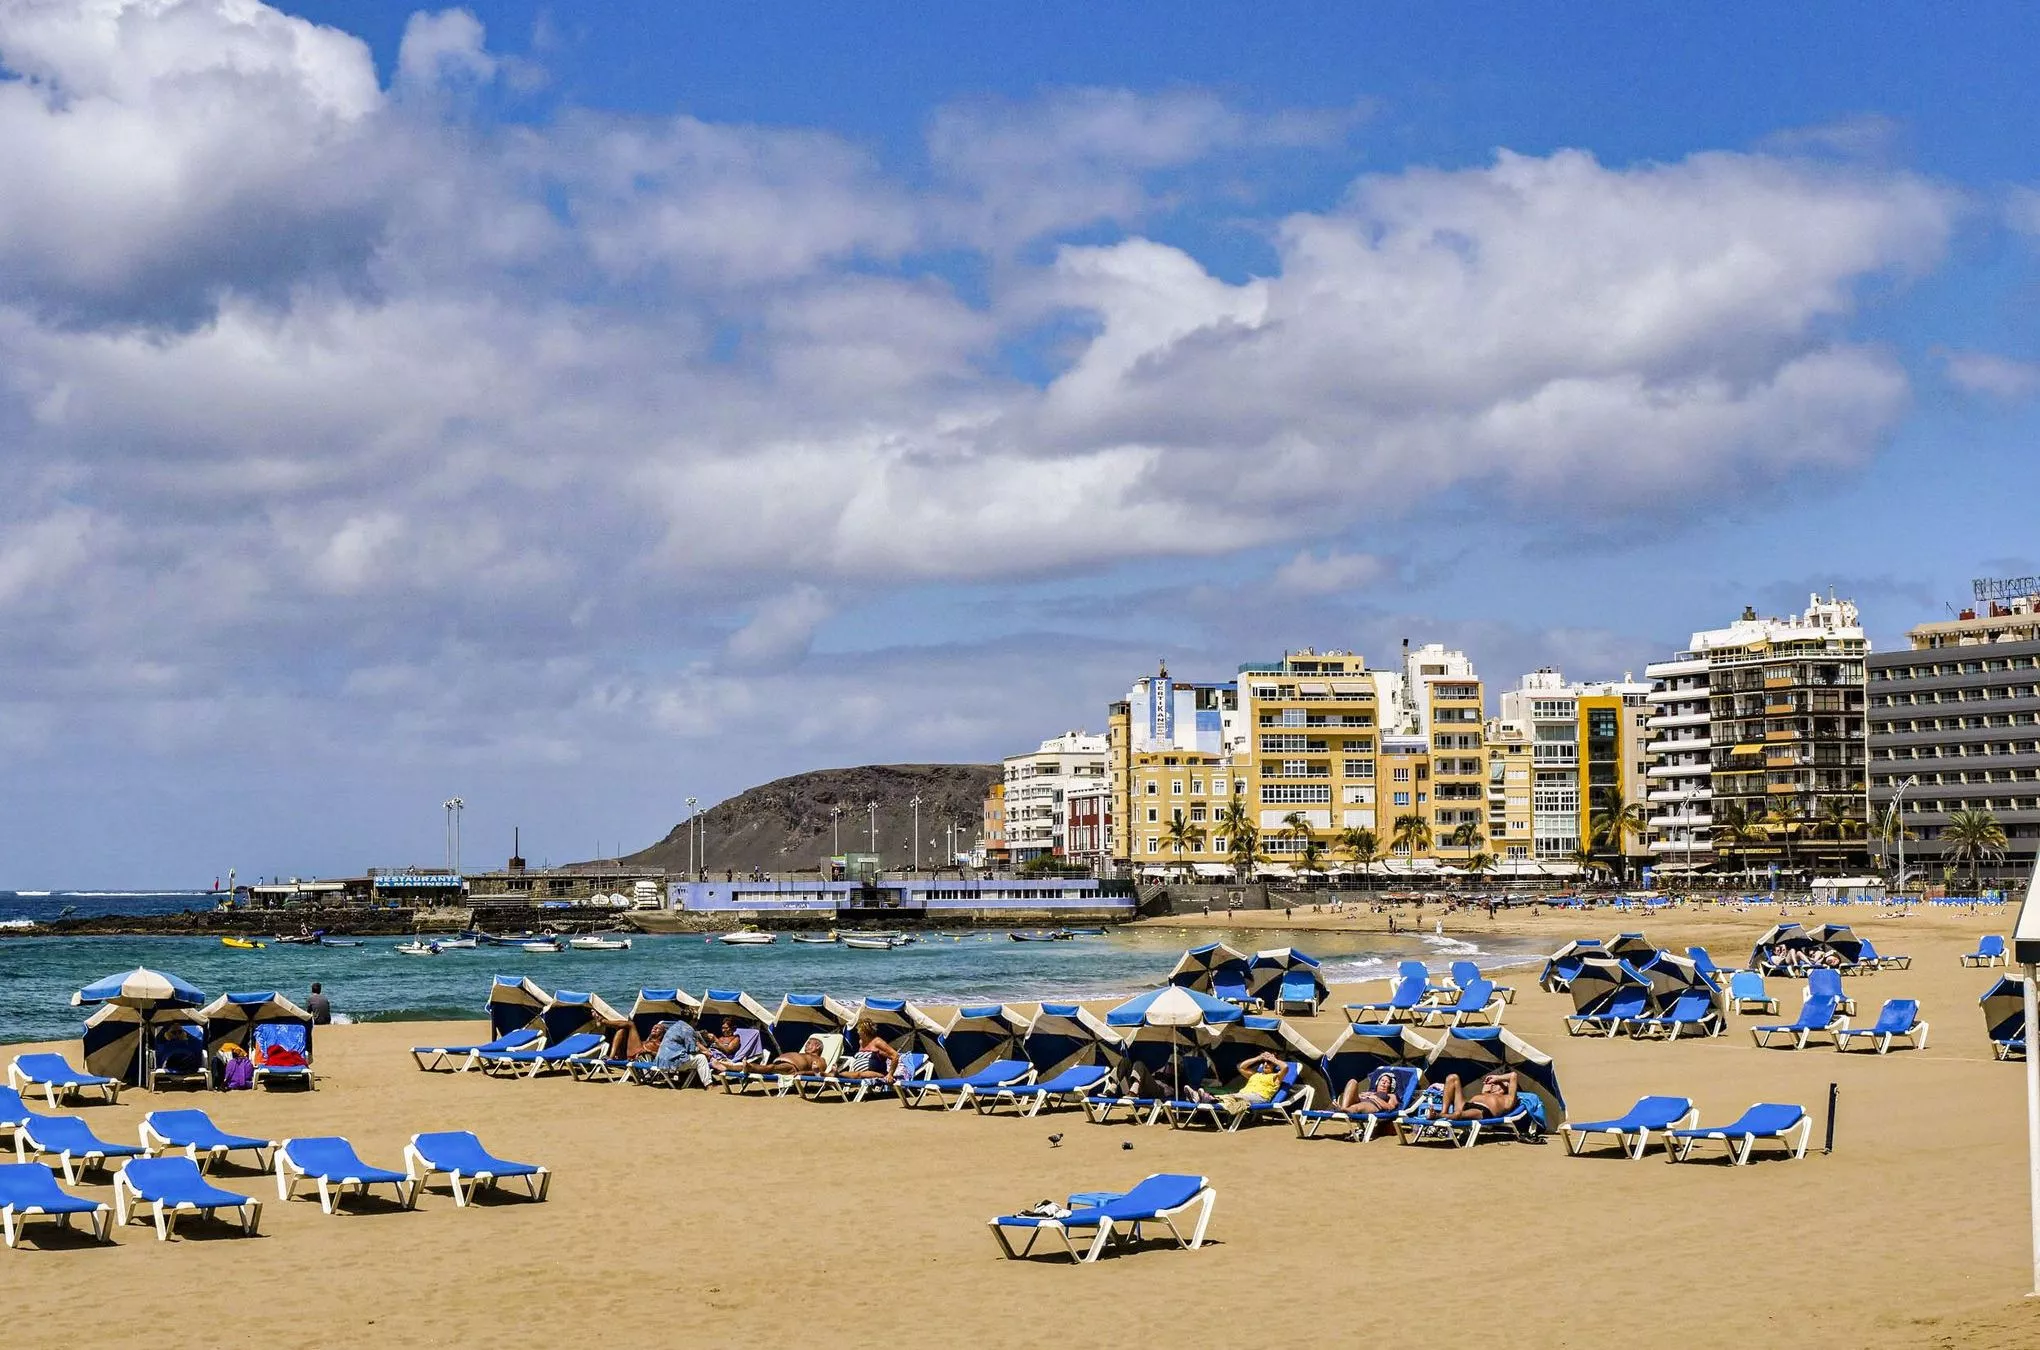 Der breite, sandige Stadtstrand von Las Palmas, die Playa de las Canteras ist meist gut besucht